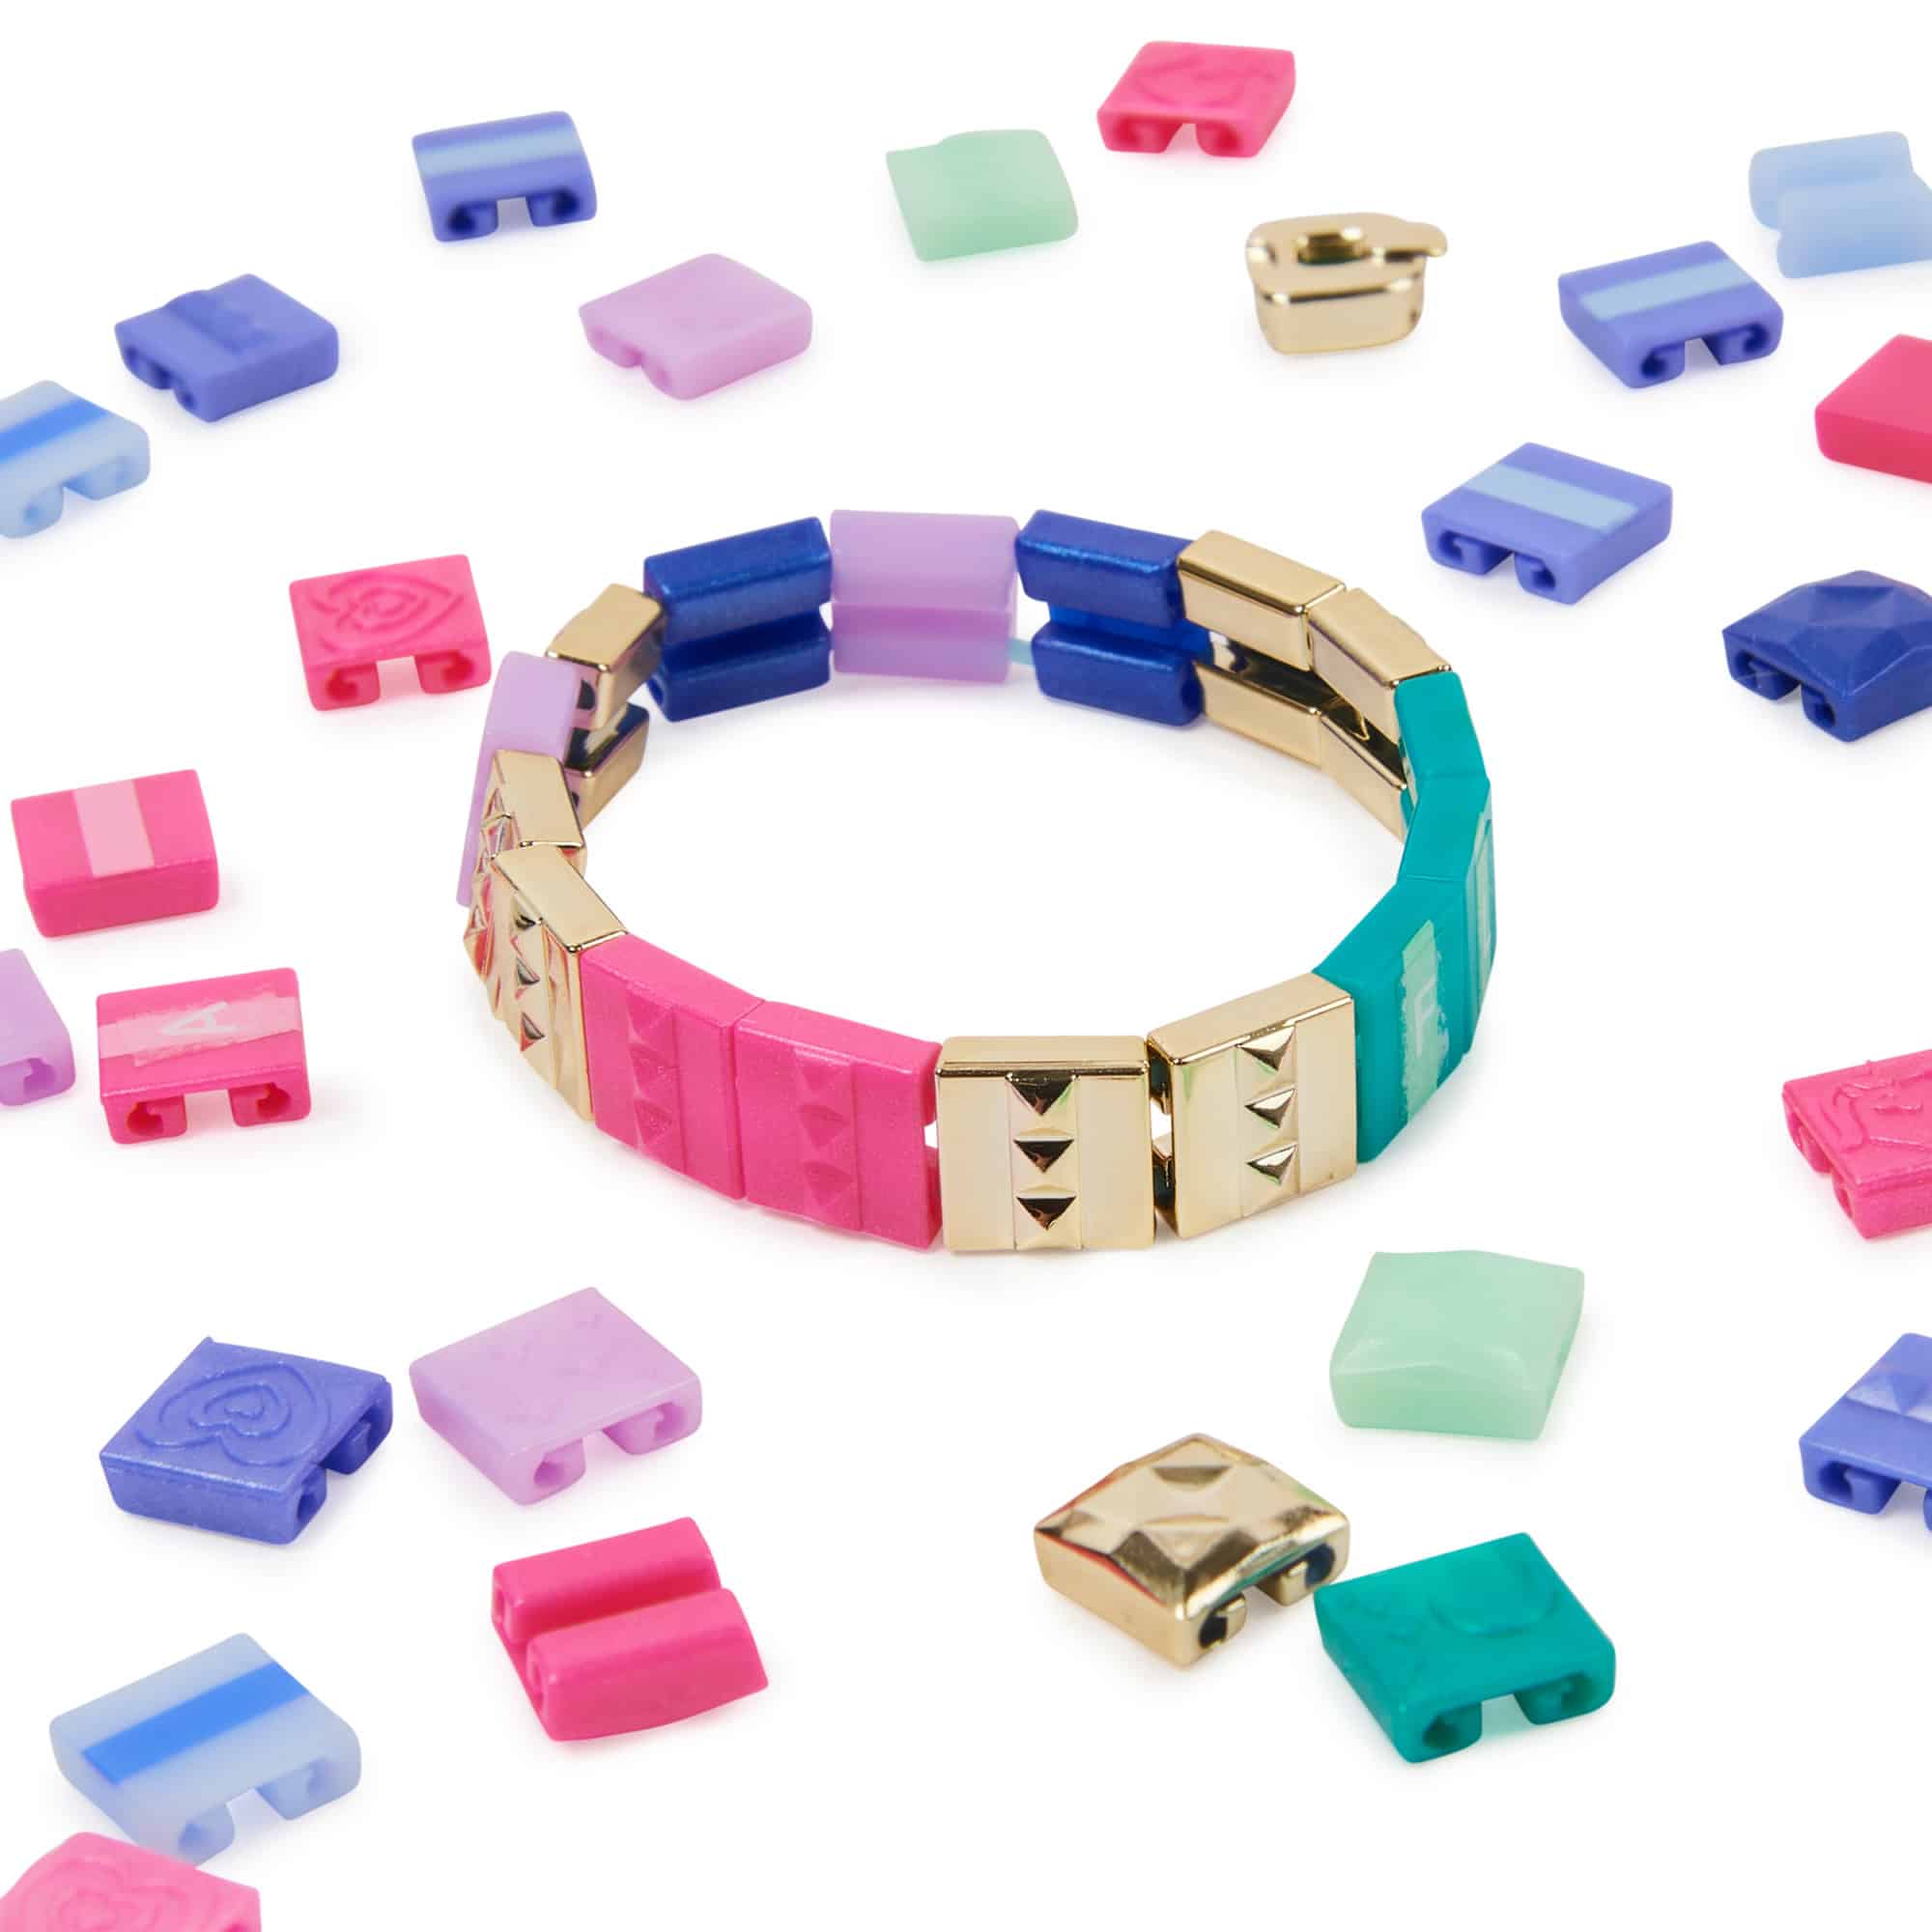 Cool Maker Pop Style Bracelet Maker at Toys R Us UK